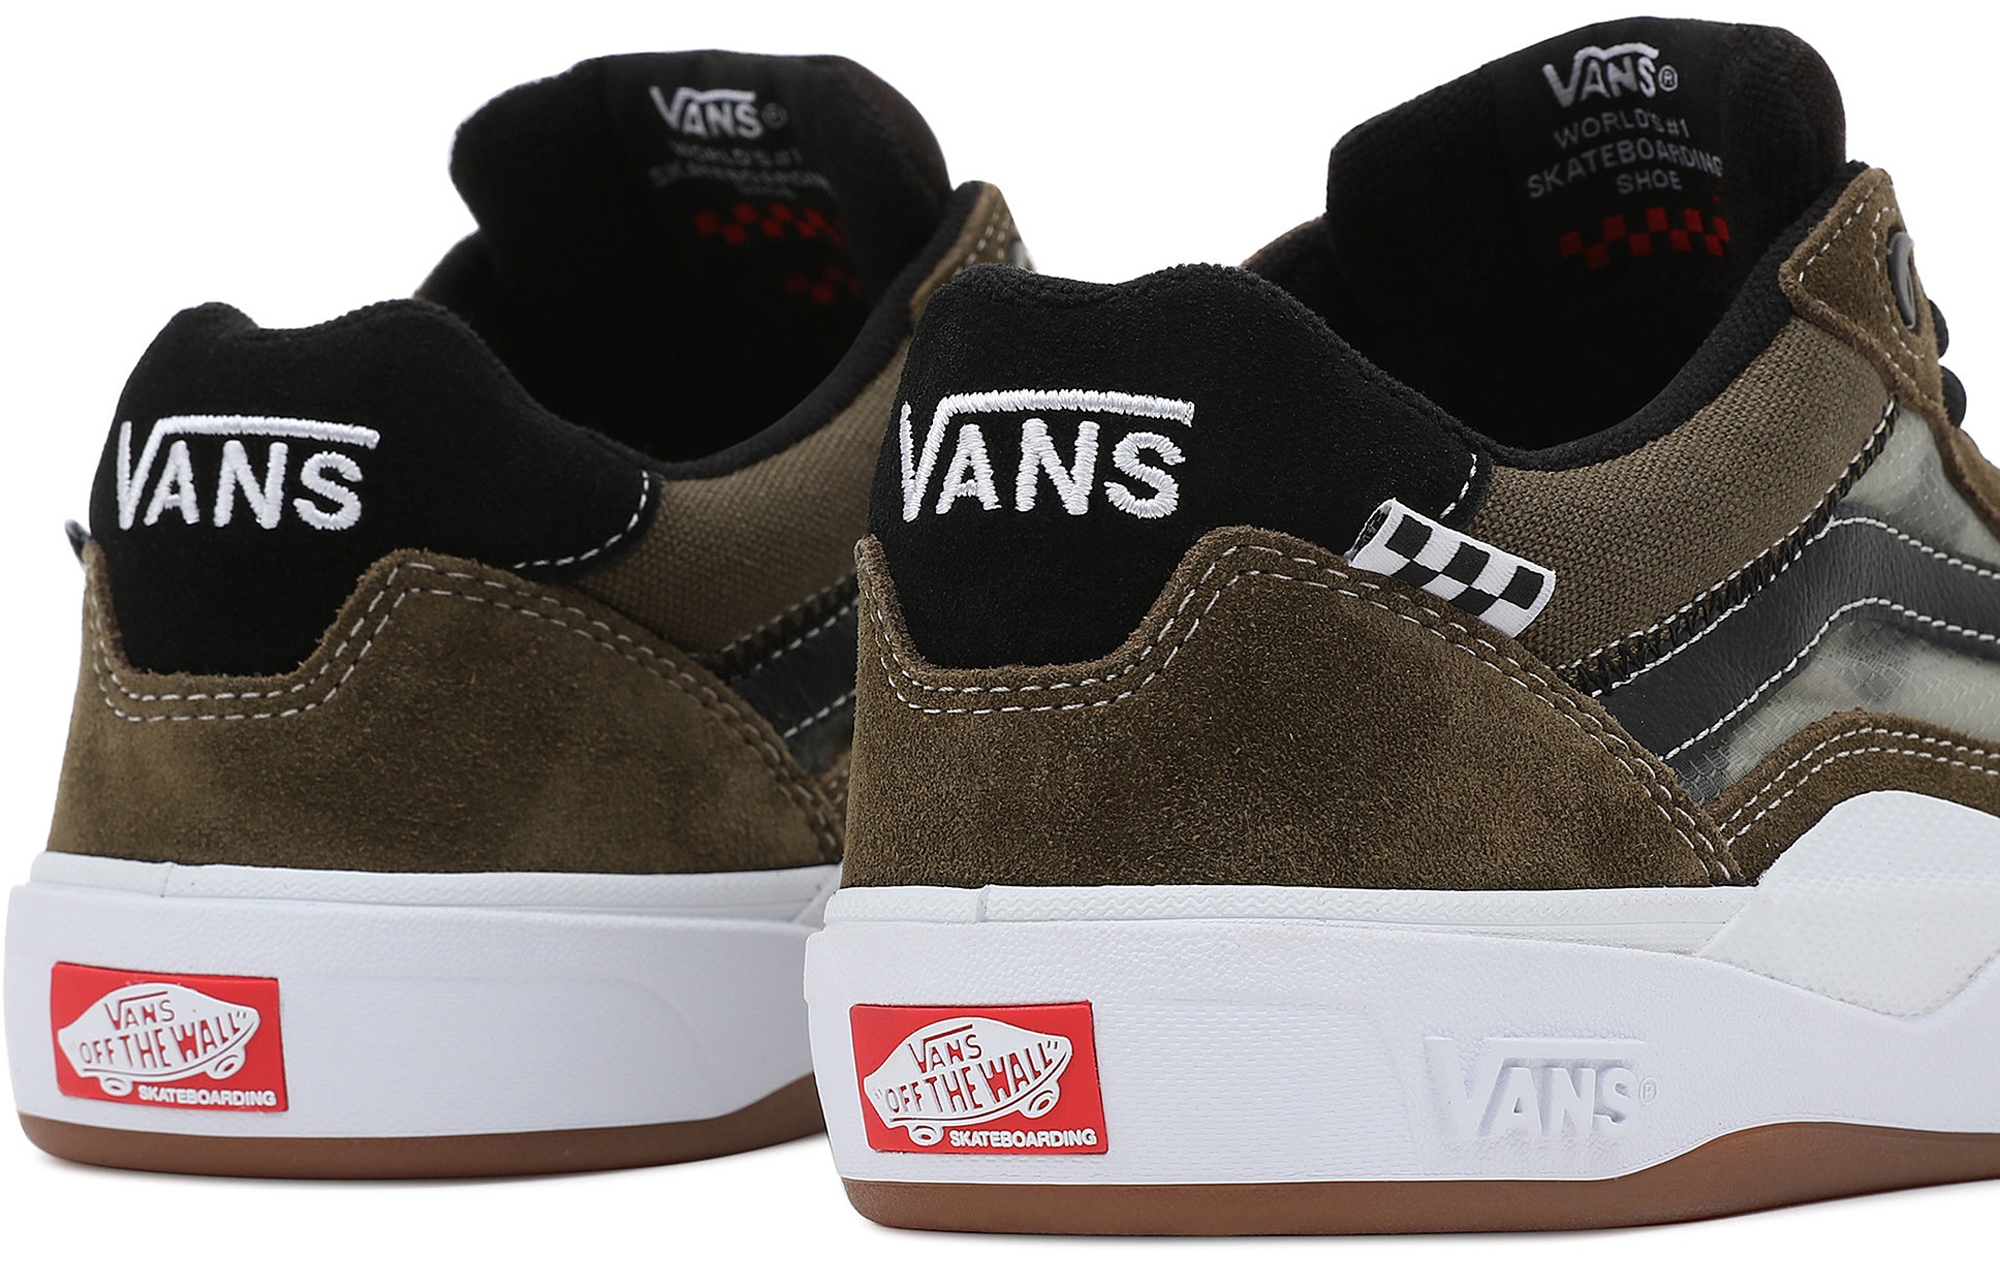 Vans Wayvee Trainers/Skate Shoes